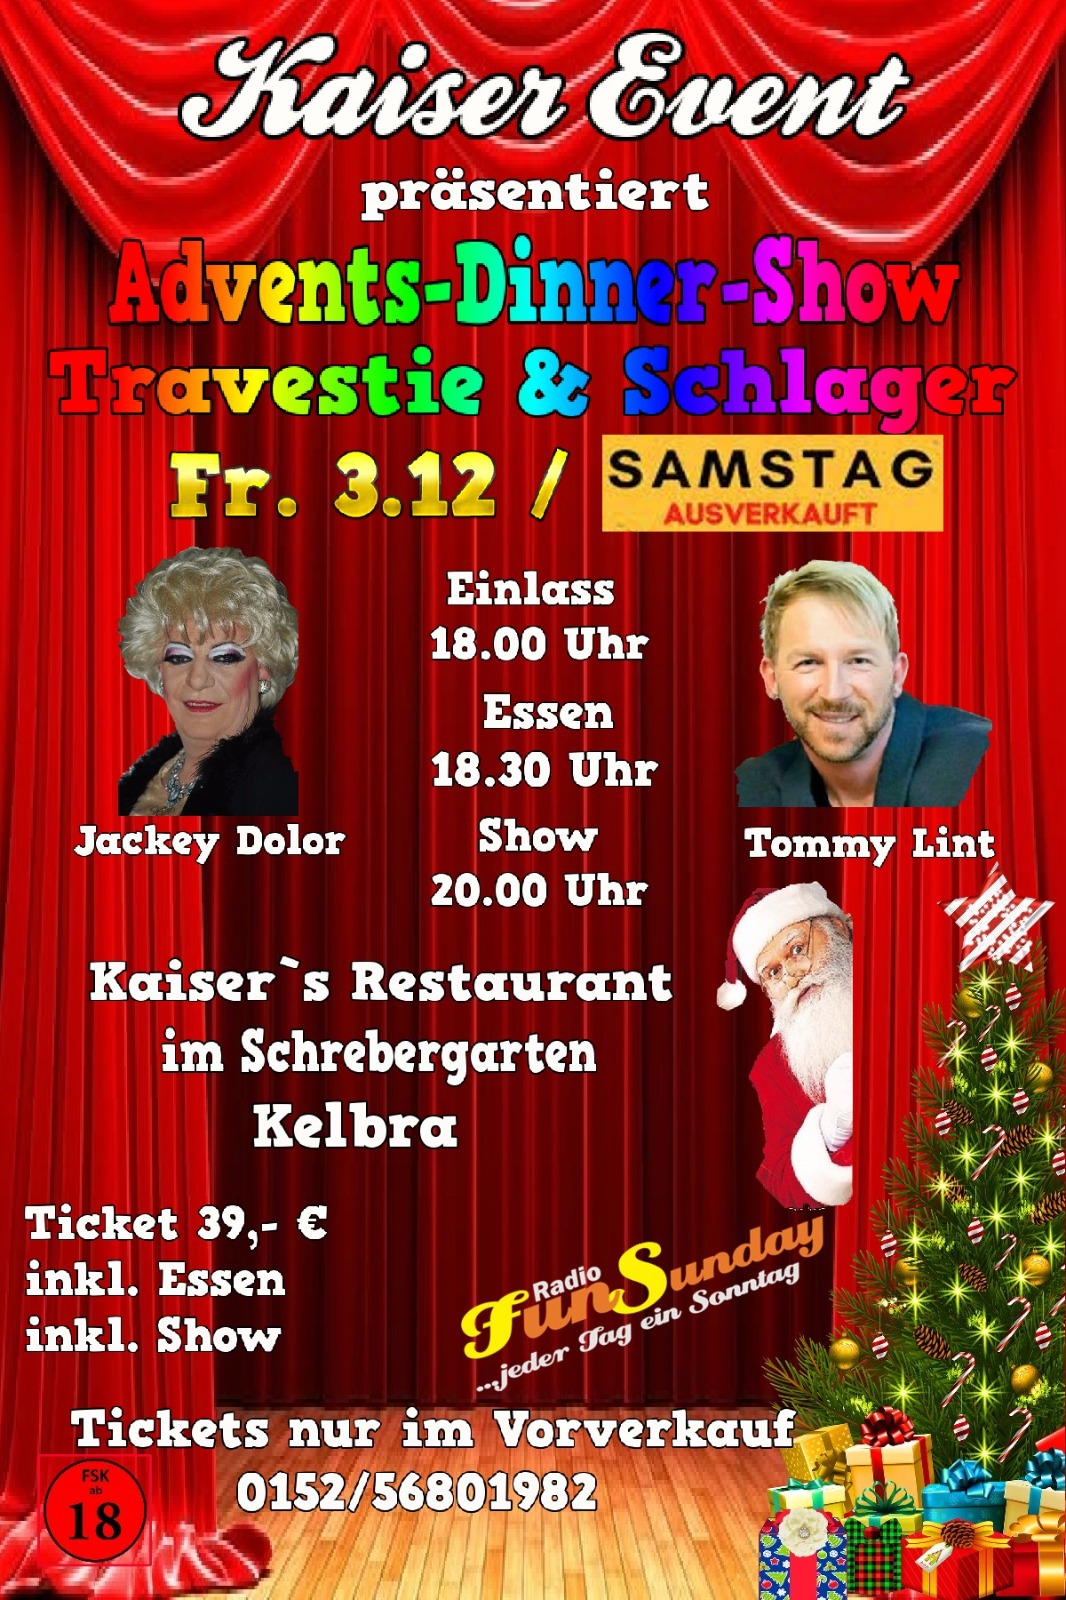 Advents-Dinner-Show / Travestie & Schlager